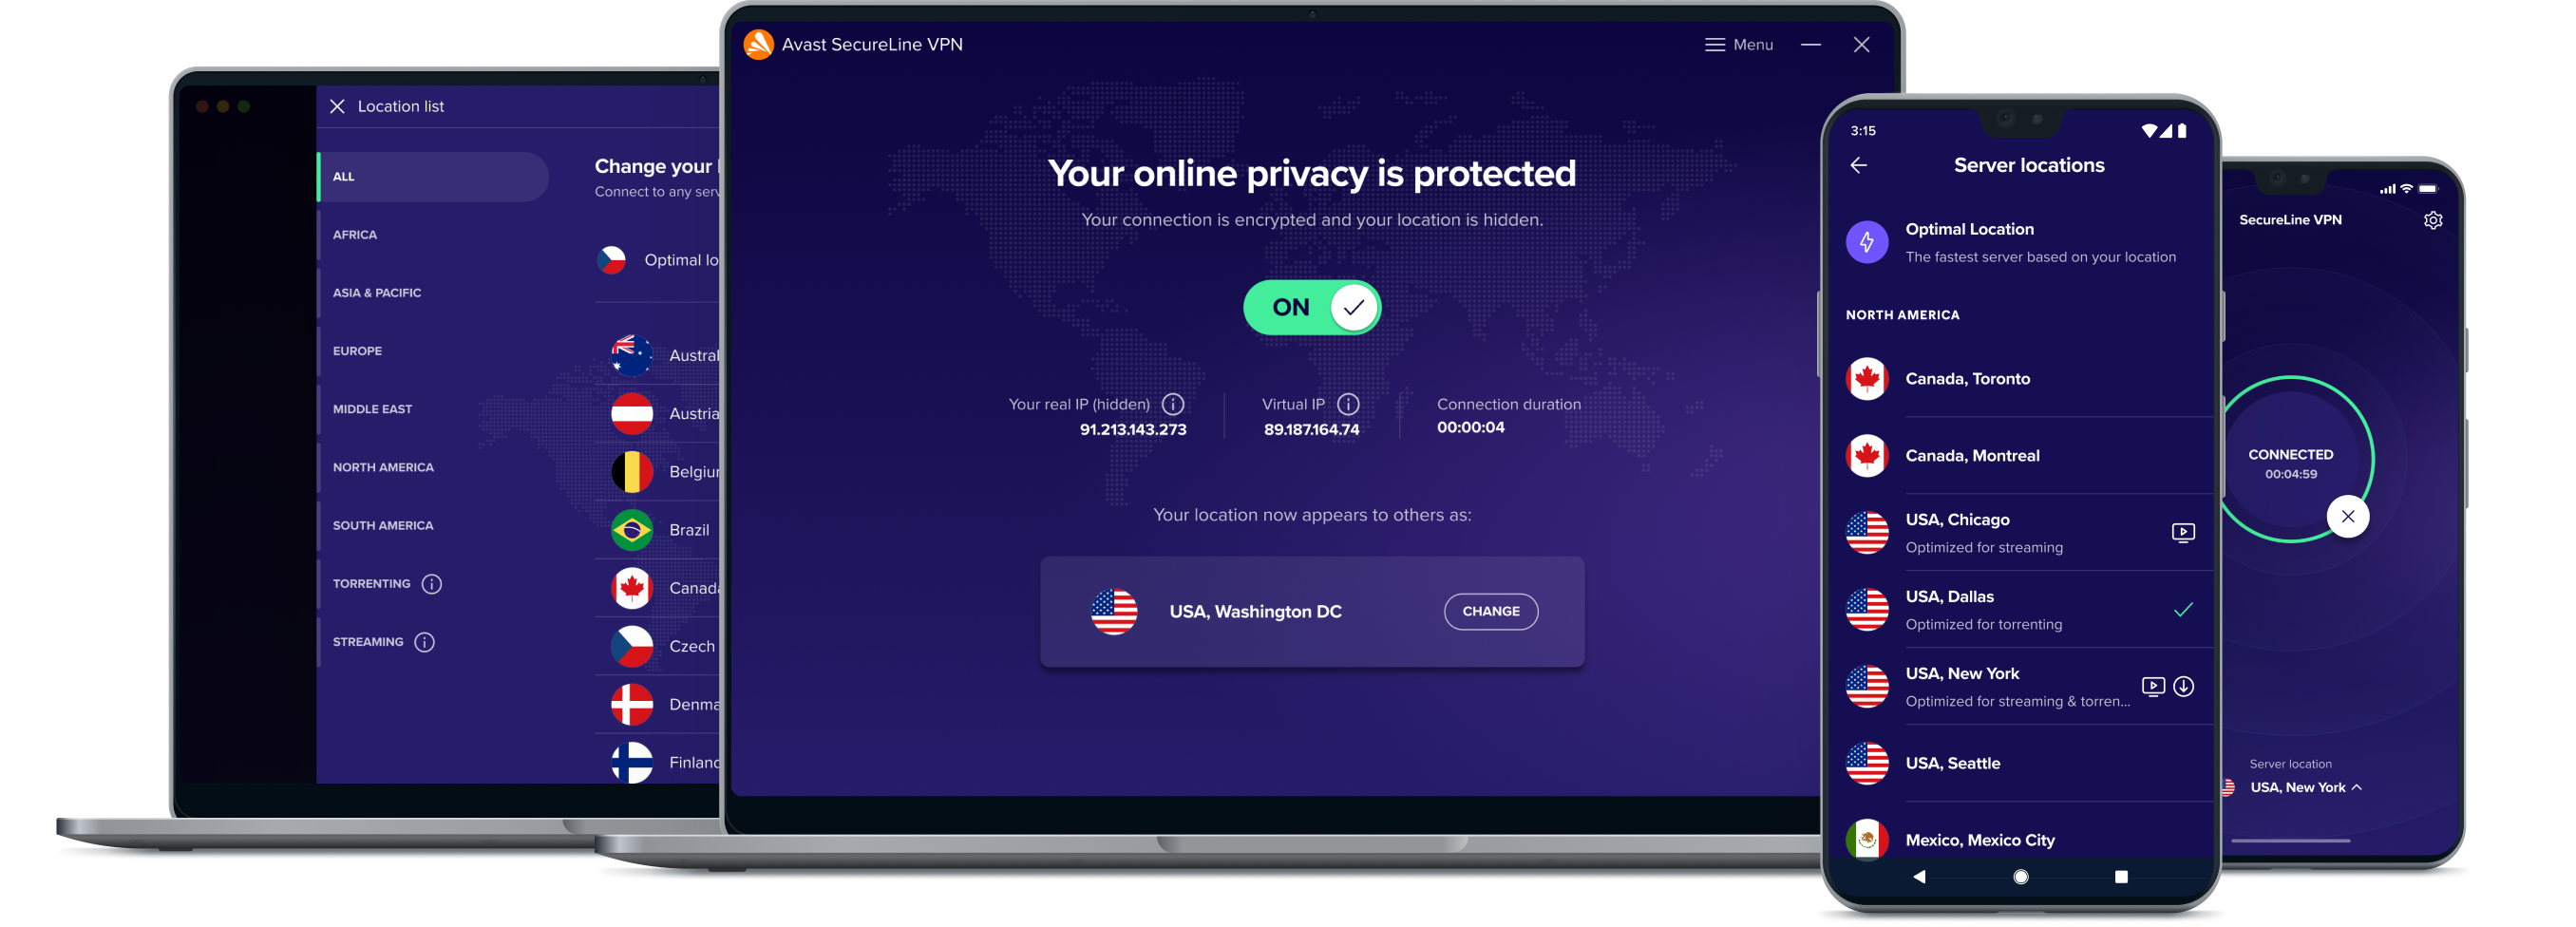 Mehr Online-Freiheit mit unserem VPN-Service